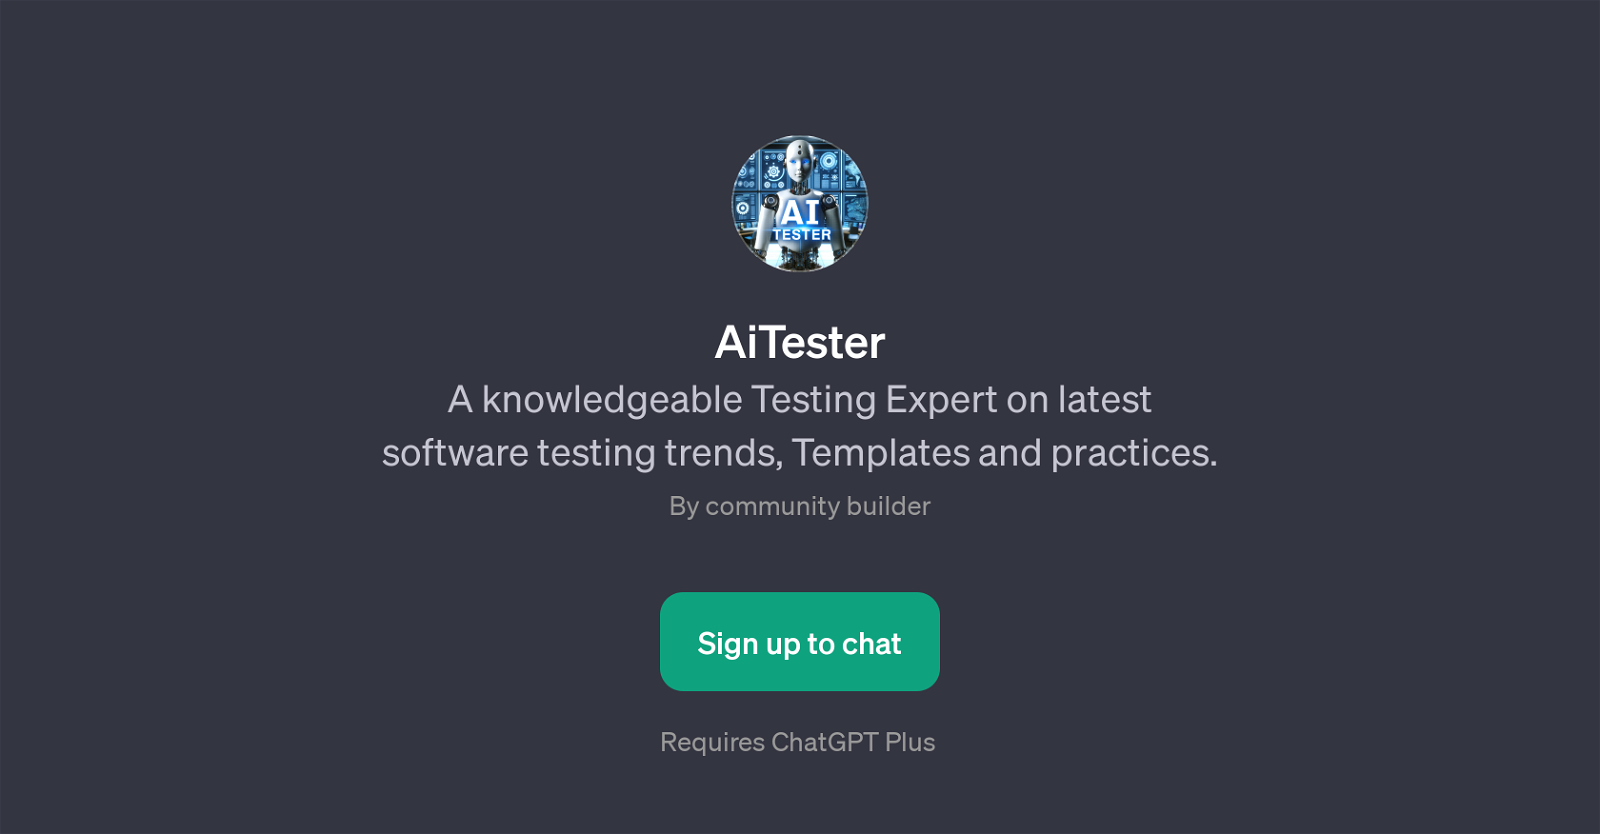 AiTester website